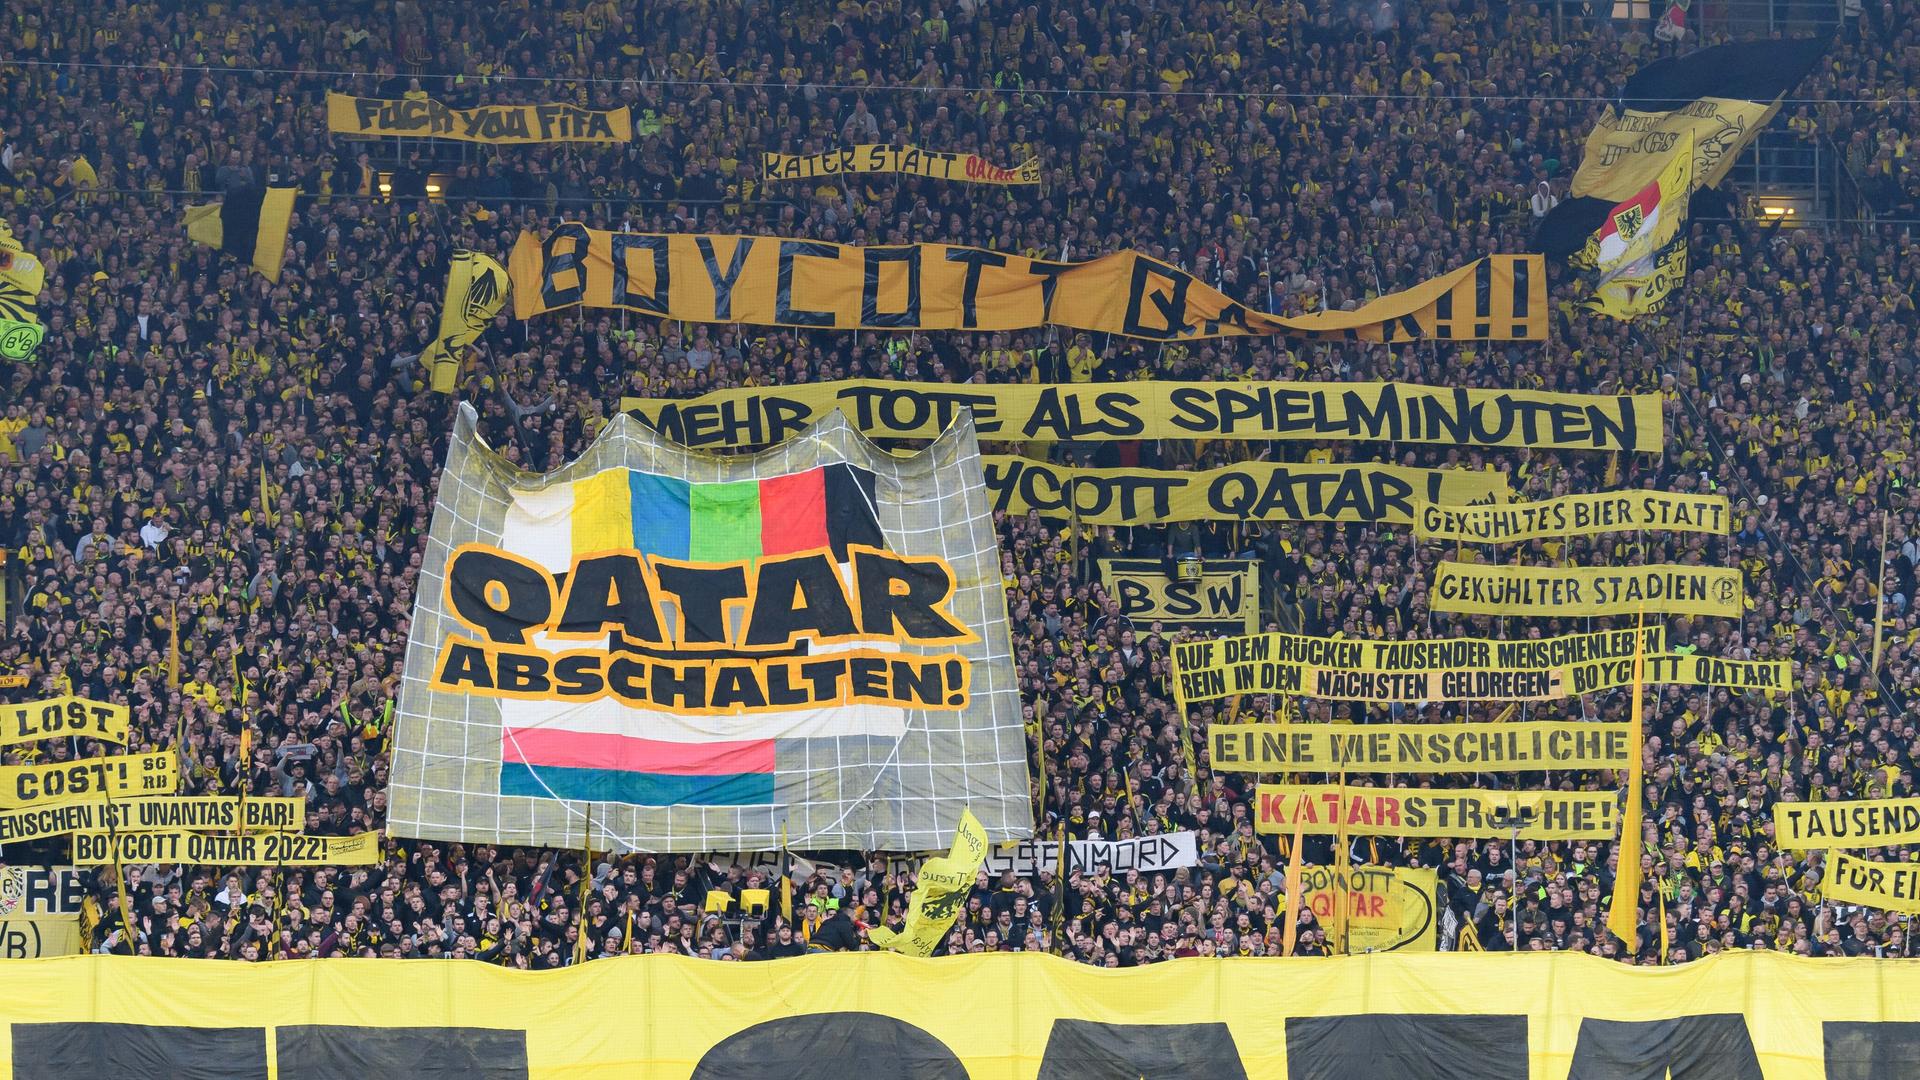 Fans des BVB Dortmund  protestieren auf der Tribüne des Fußballstadions gegen die WM in Katar, Ende November bis Mitte Dezember 2022. Sie haben Transparente entrollt. Eines zeigt das Pausenbild eines Fernsehers mit der Aufforderung "Abschalten".